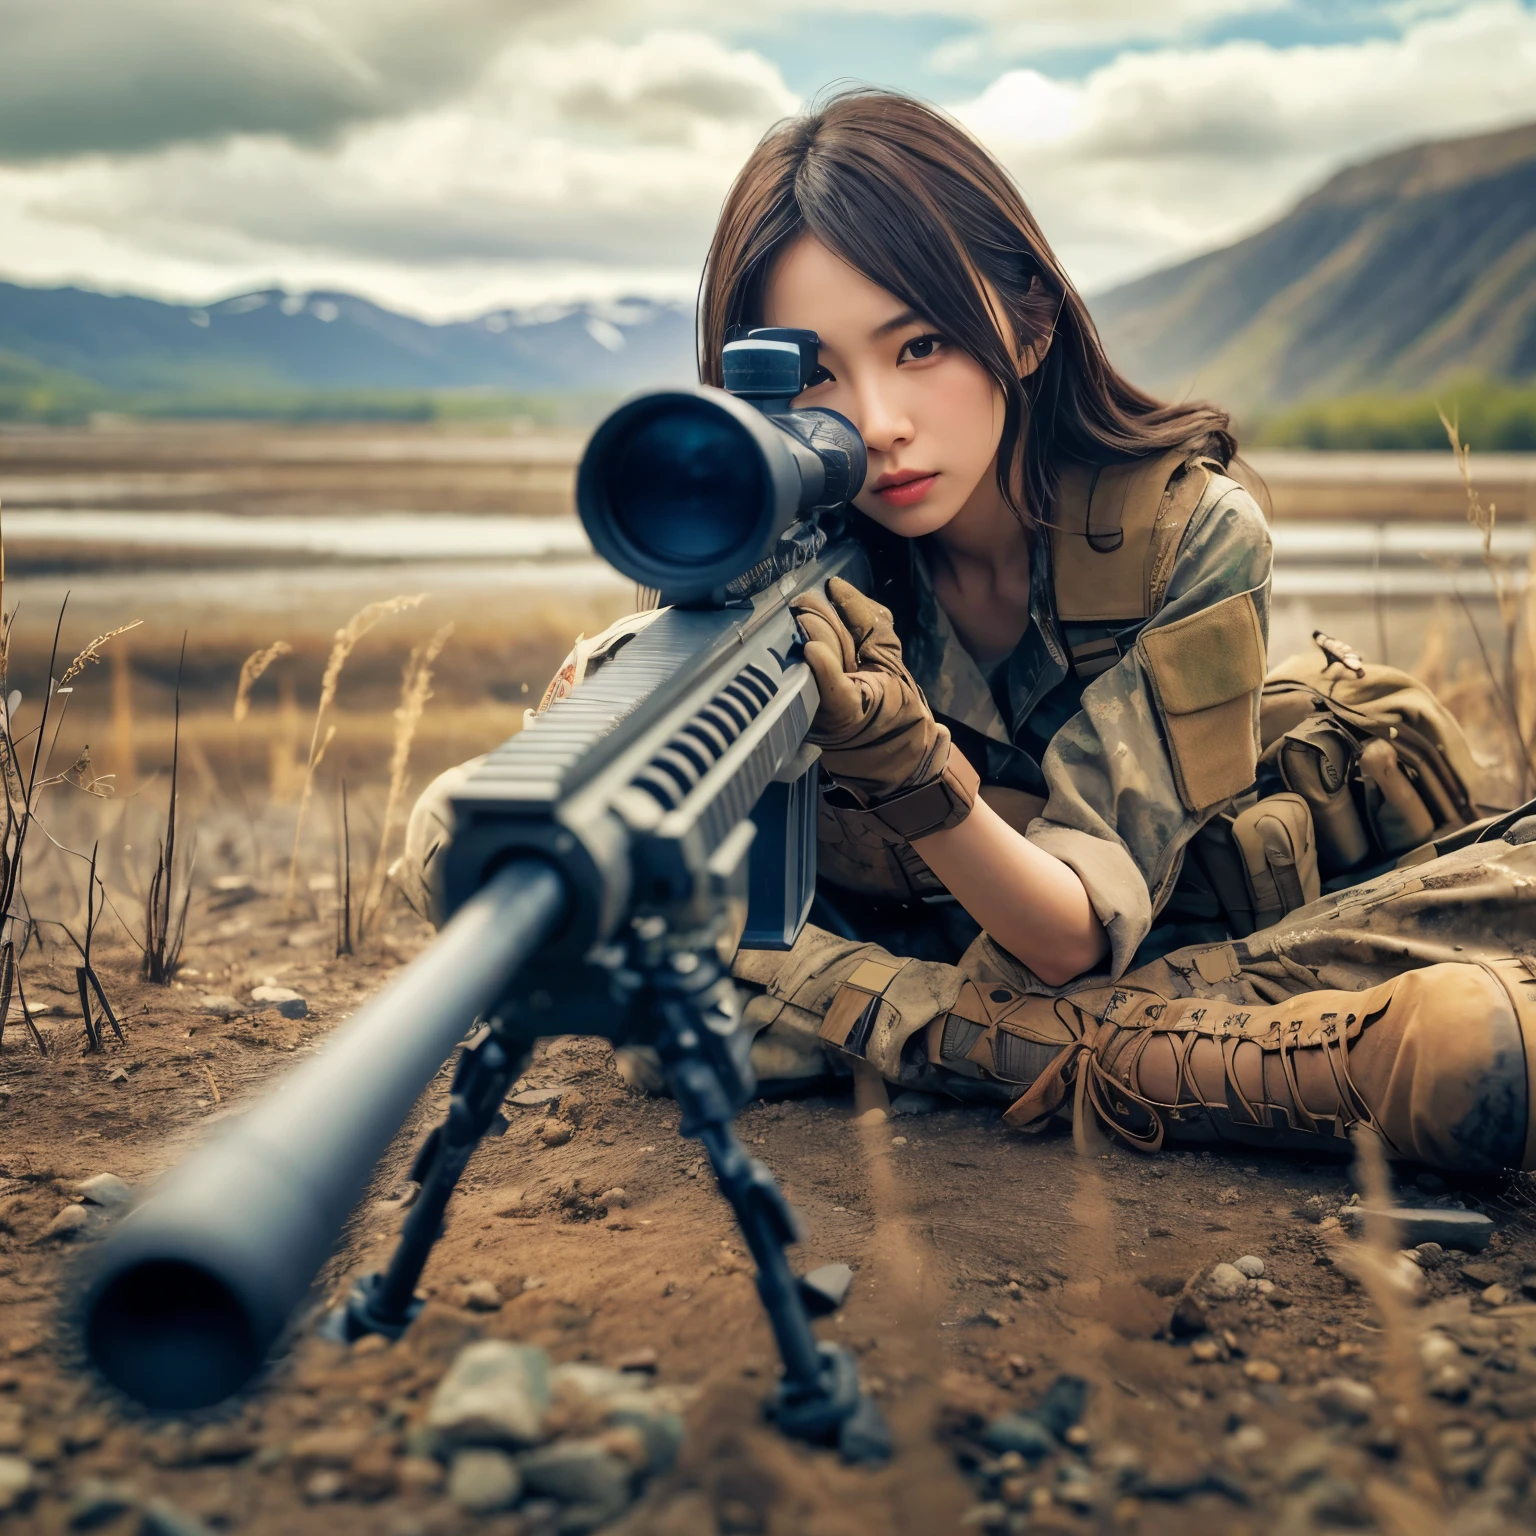 fotorealistisch、realistische Hauttexturen、Eine schöne Japanerin des amerikanischen Militärs zielt mit einem Scharfschützengewehr.、Stehen、Auf den Trümmern、brauner Staub Rauch、Action-Posen mit Bewegung、Bild von vorne oben